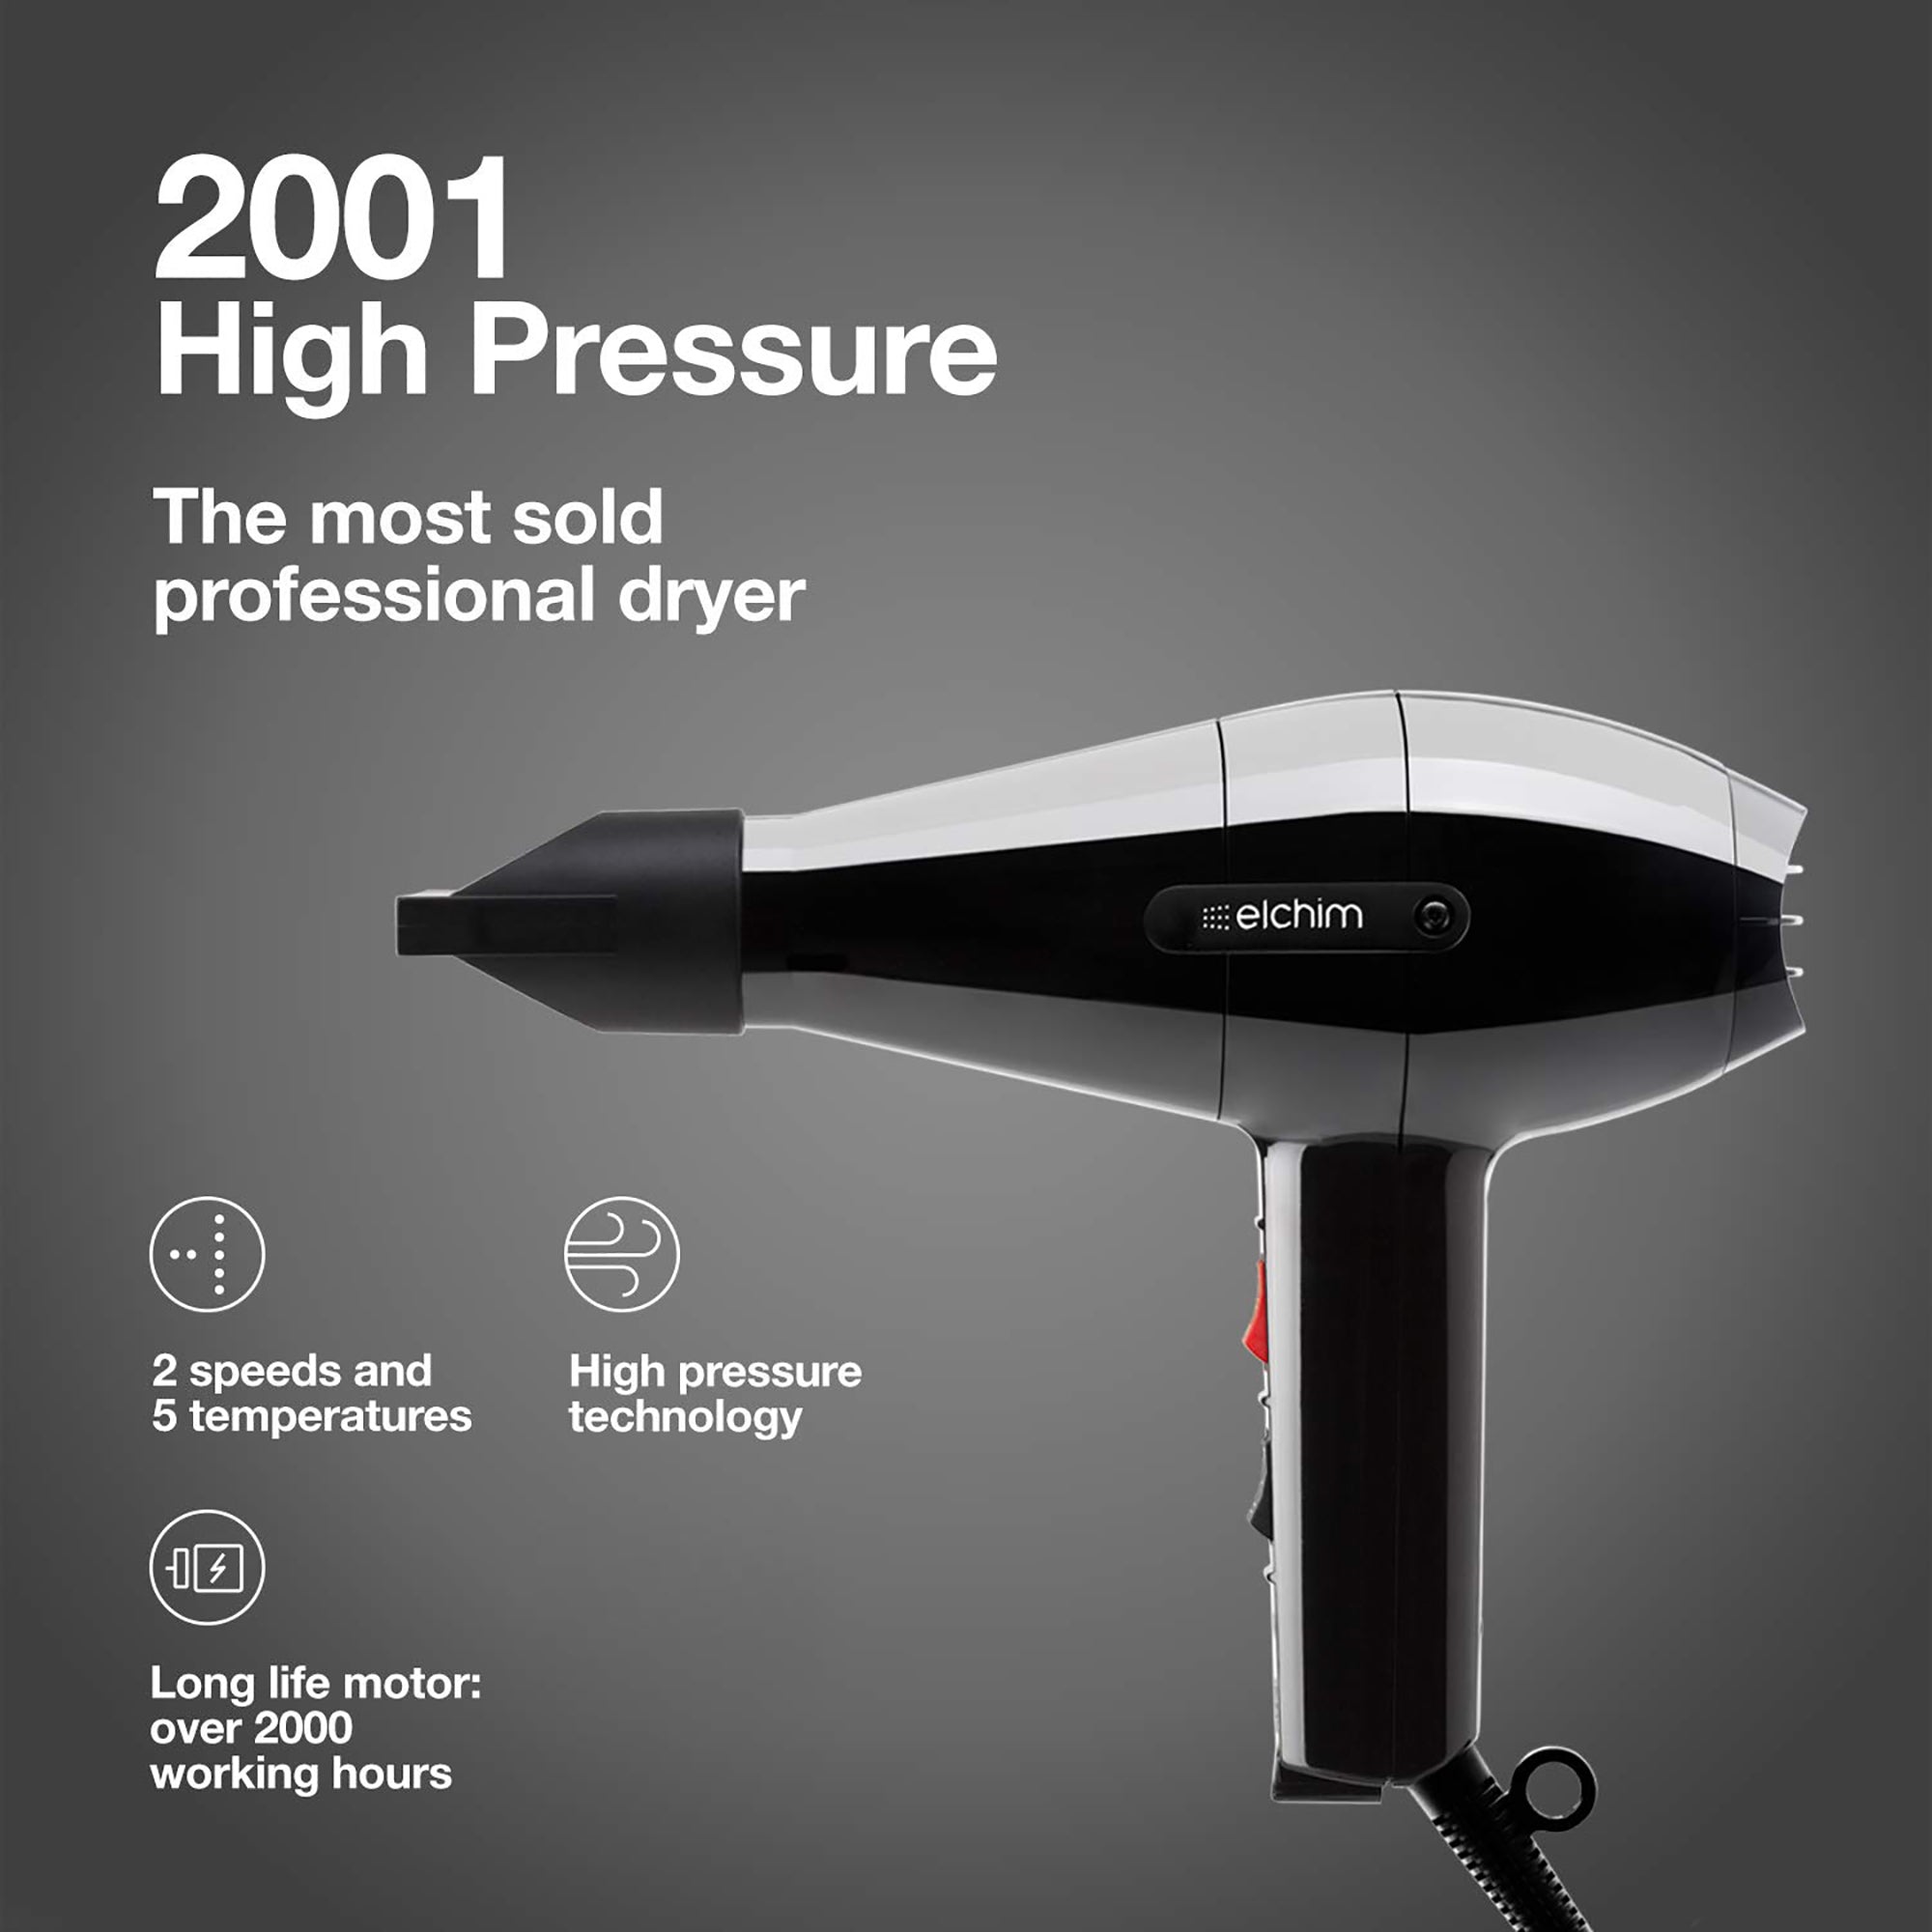 Elchim Dryer 2001 High Pressure Black / 2001